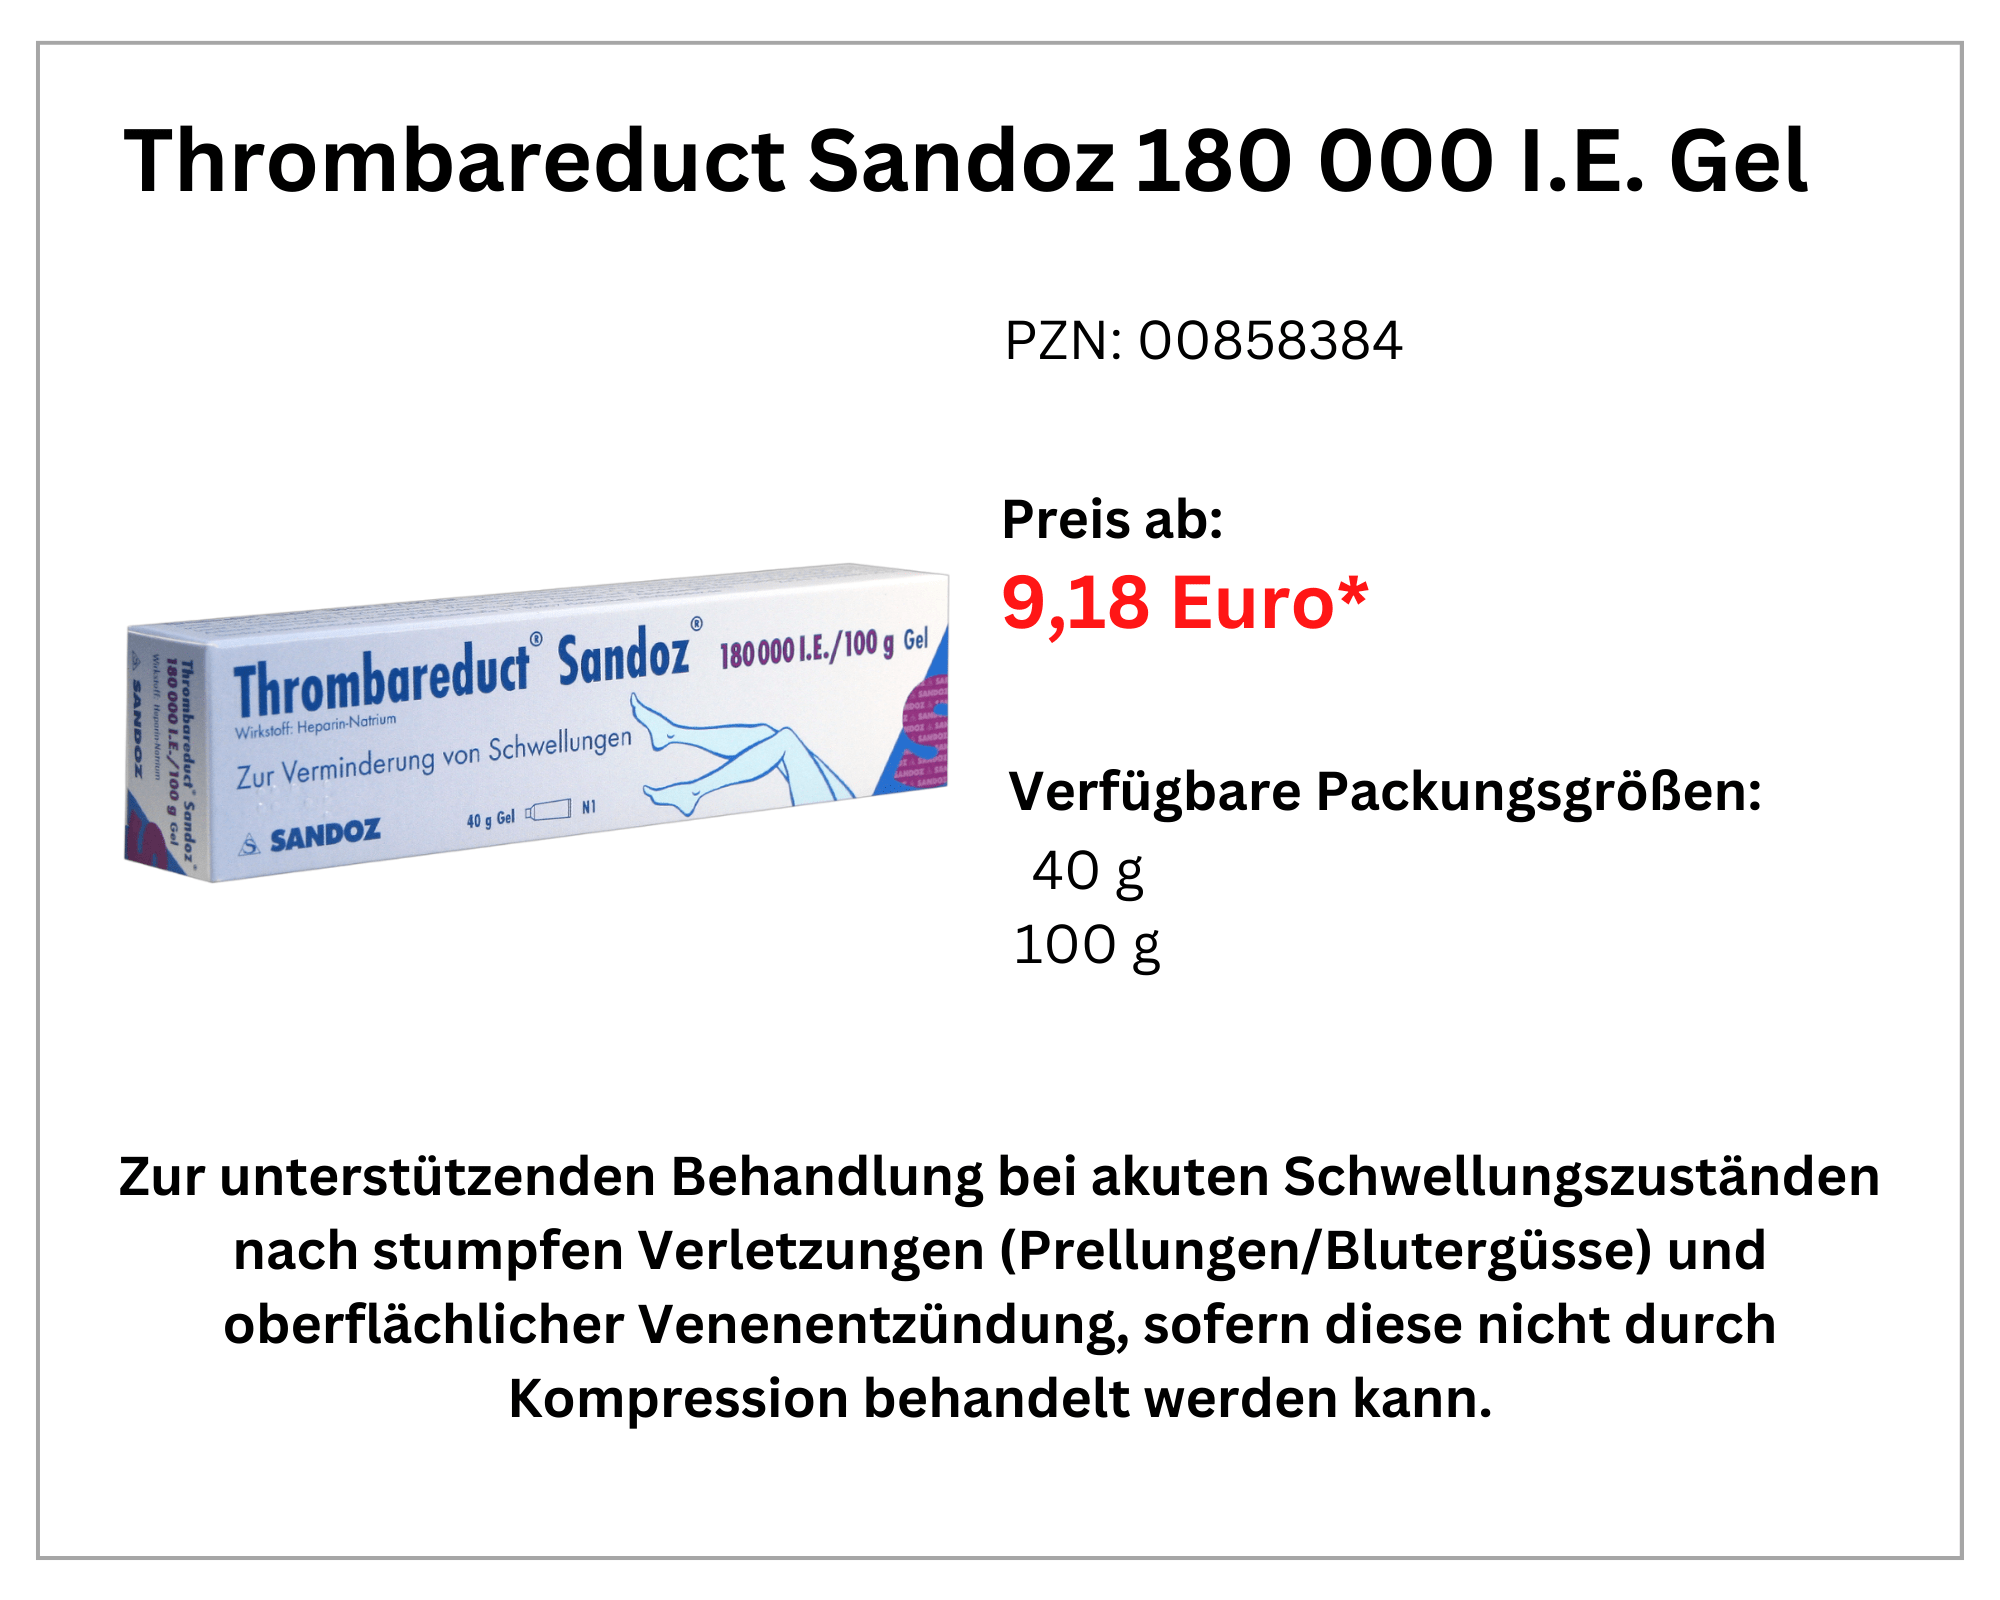  Thrombareduct Sandoz 180.000 I.E. width=